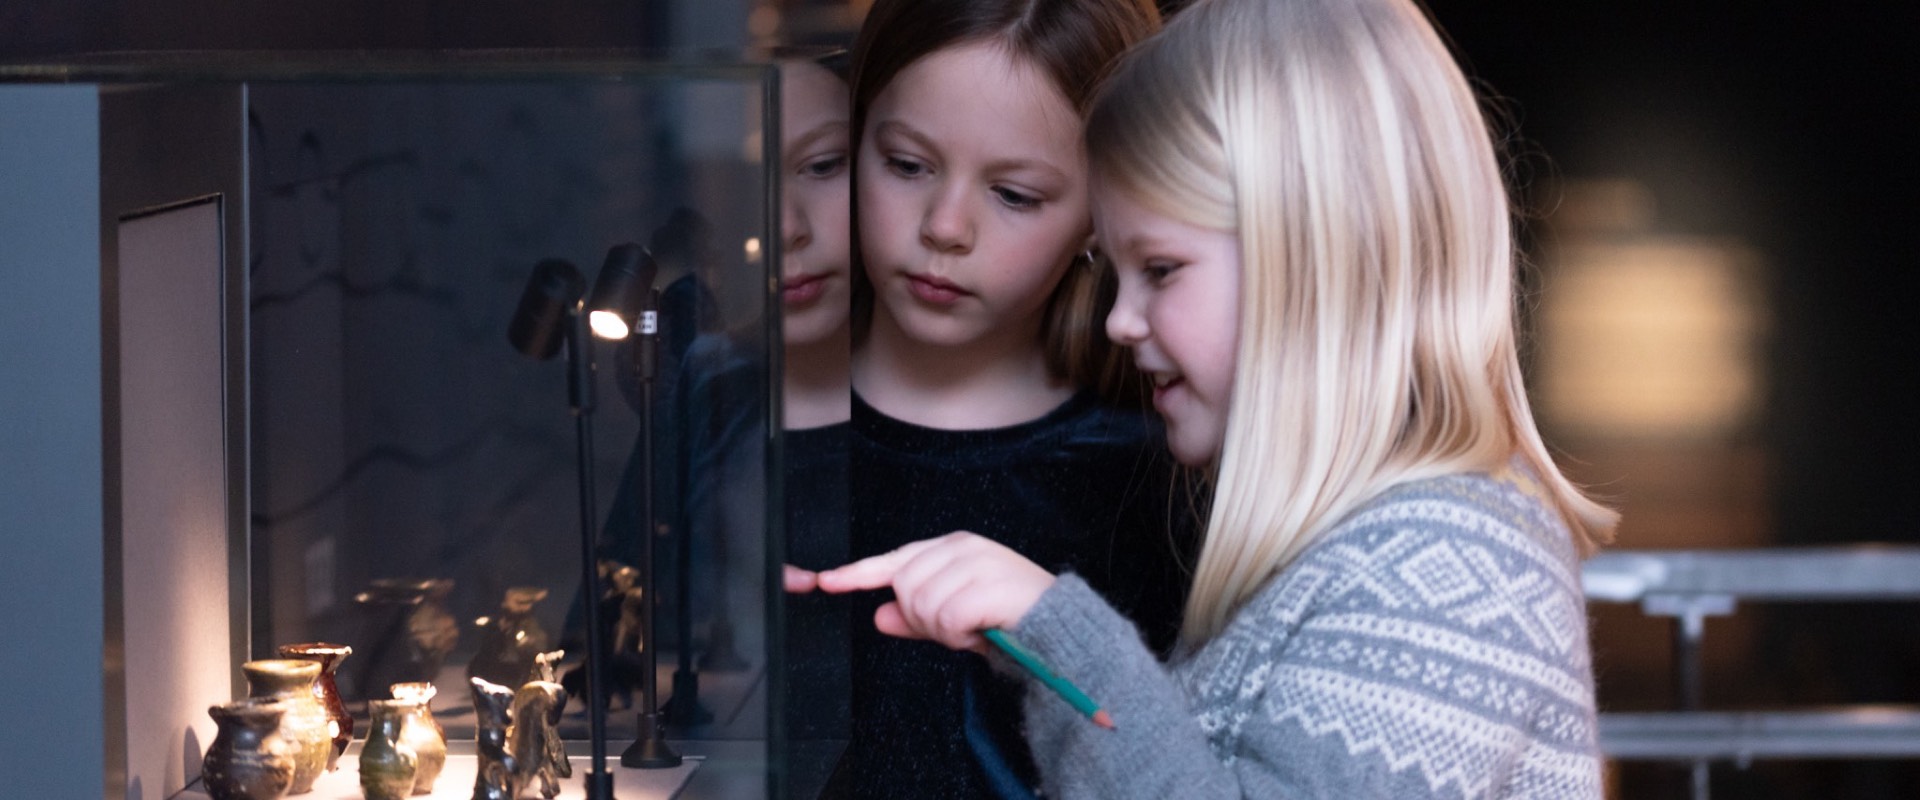 Bryggens Museum under jorden aktiviteter for barn